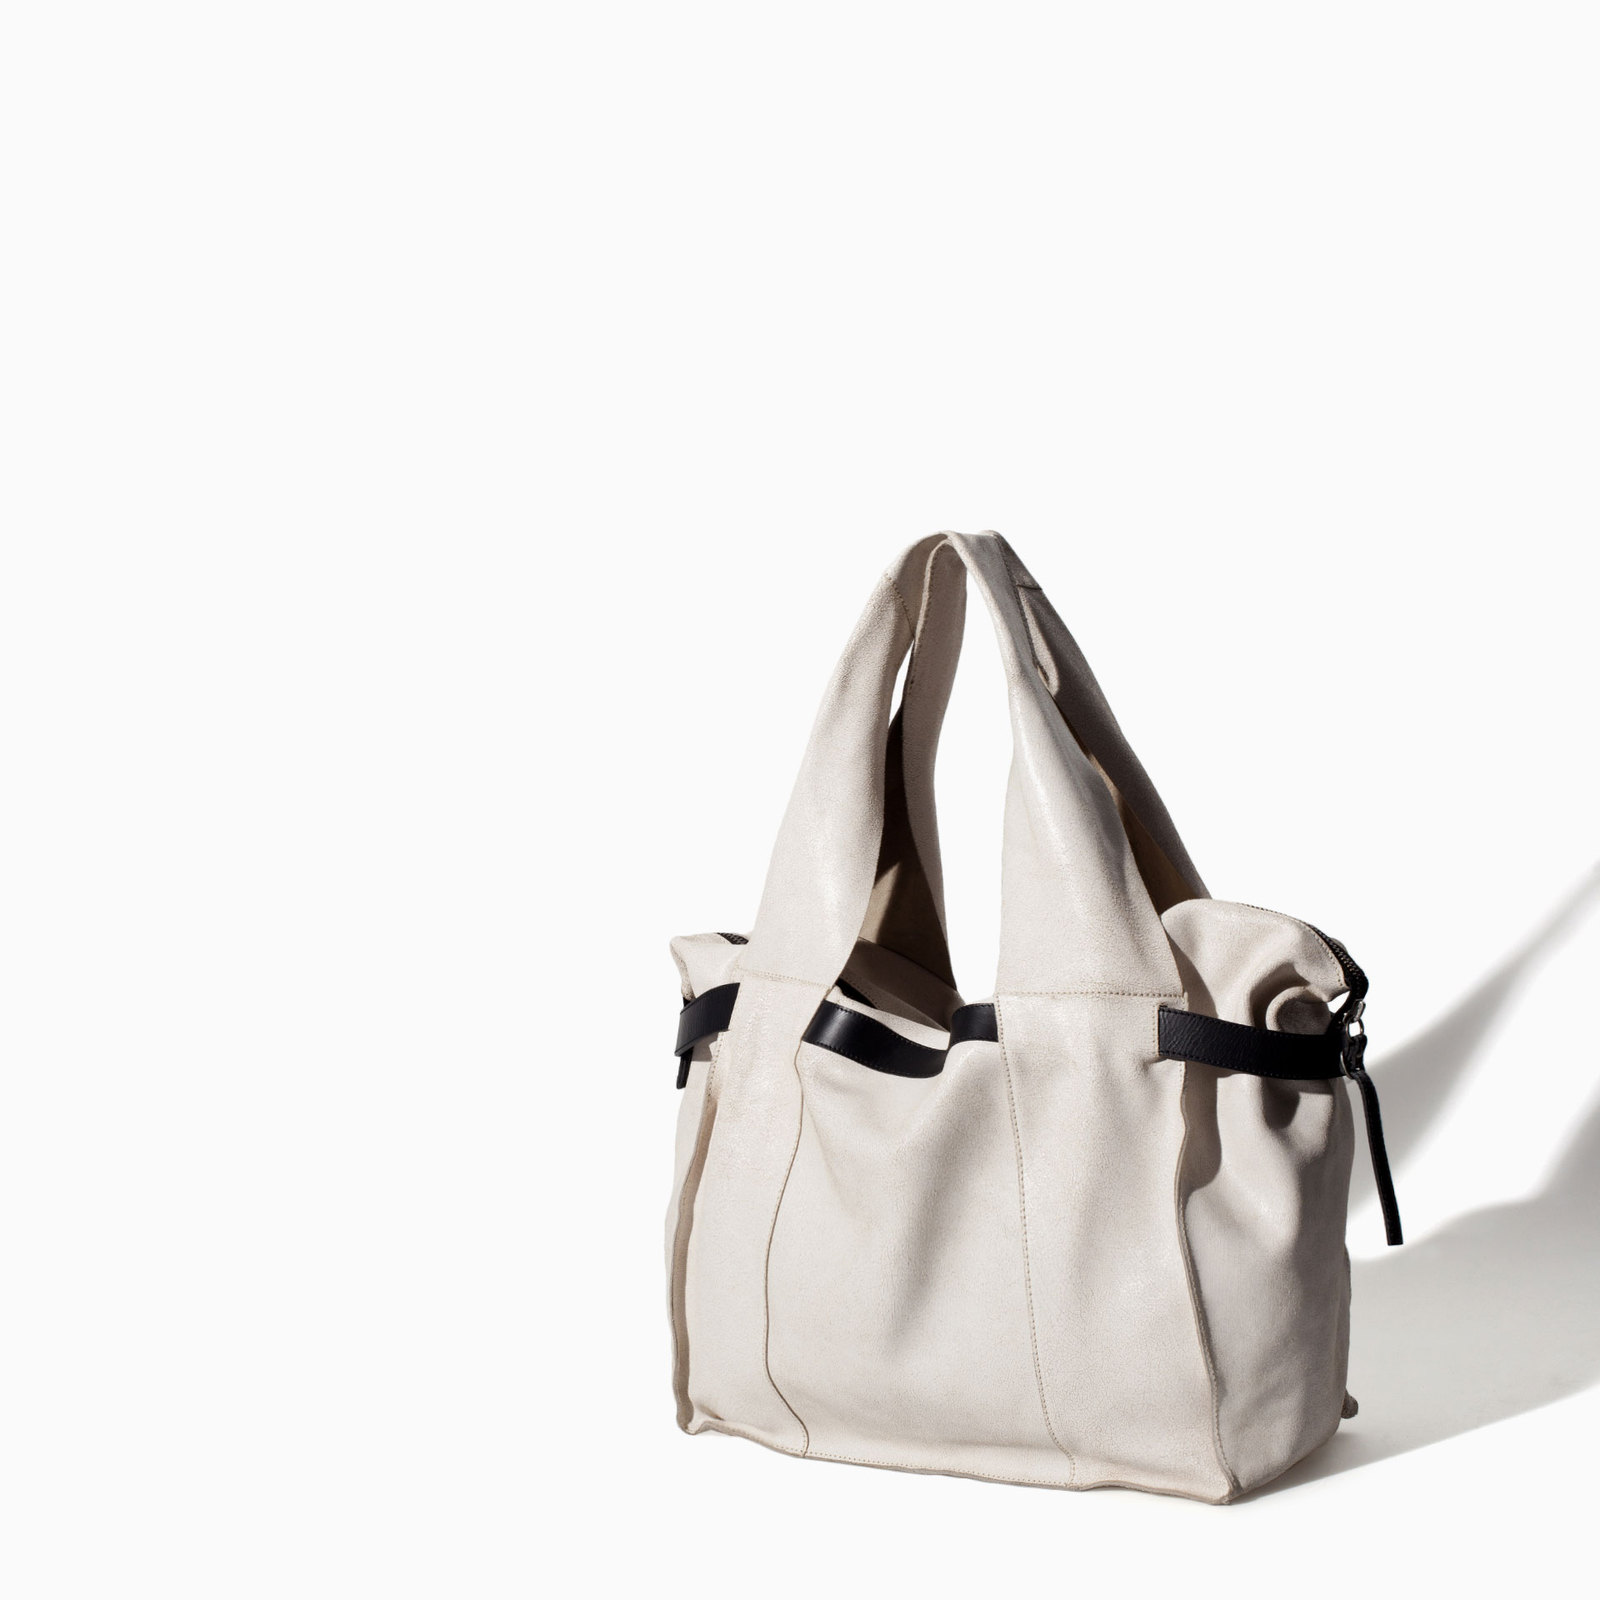 Zara fehér bőr táska 2014 fotója